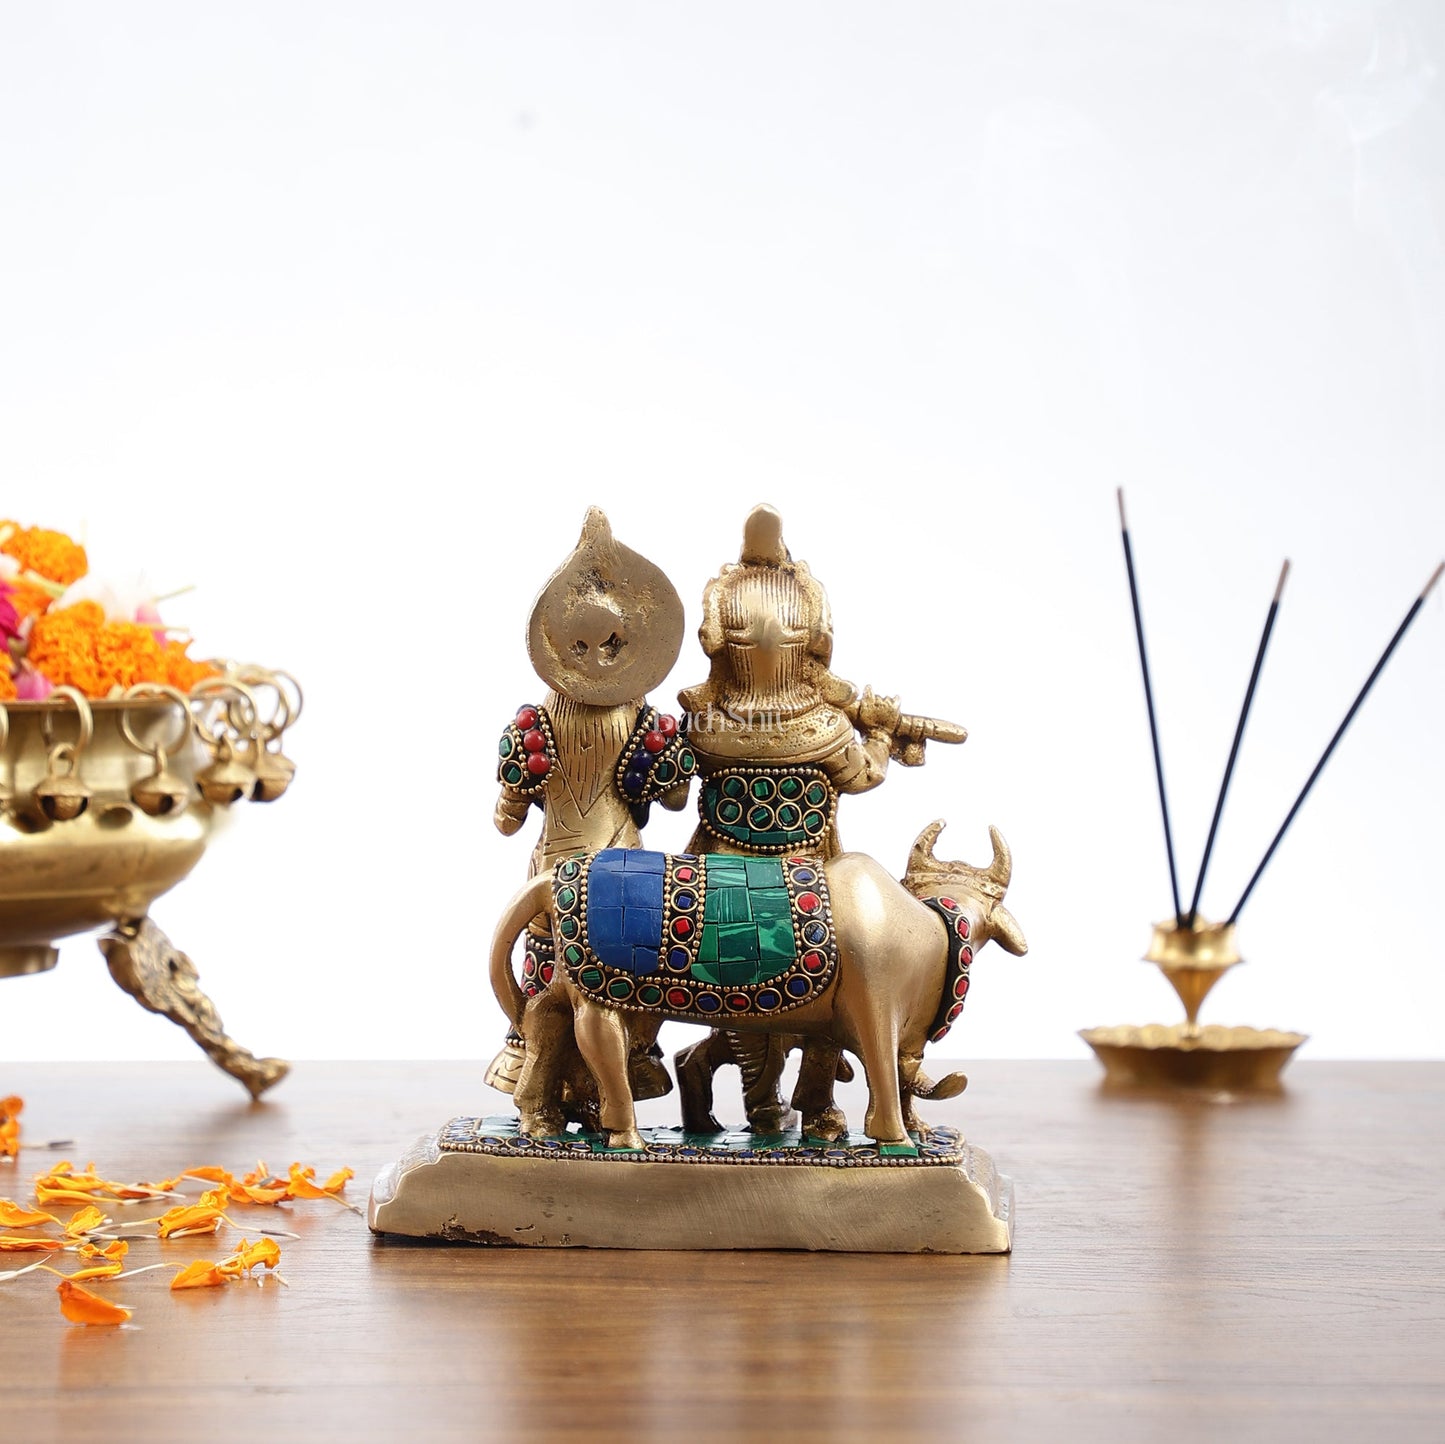 Pure Brass Radha Krishna with Cow Idol - Meenakari Stonework - 7" - Budhshiv.com